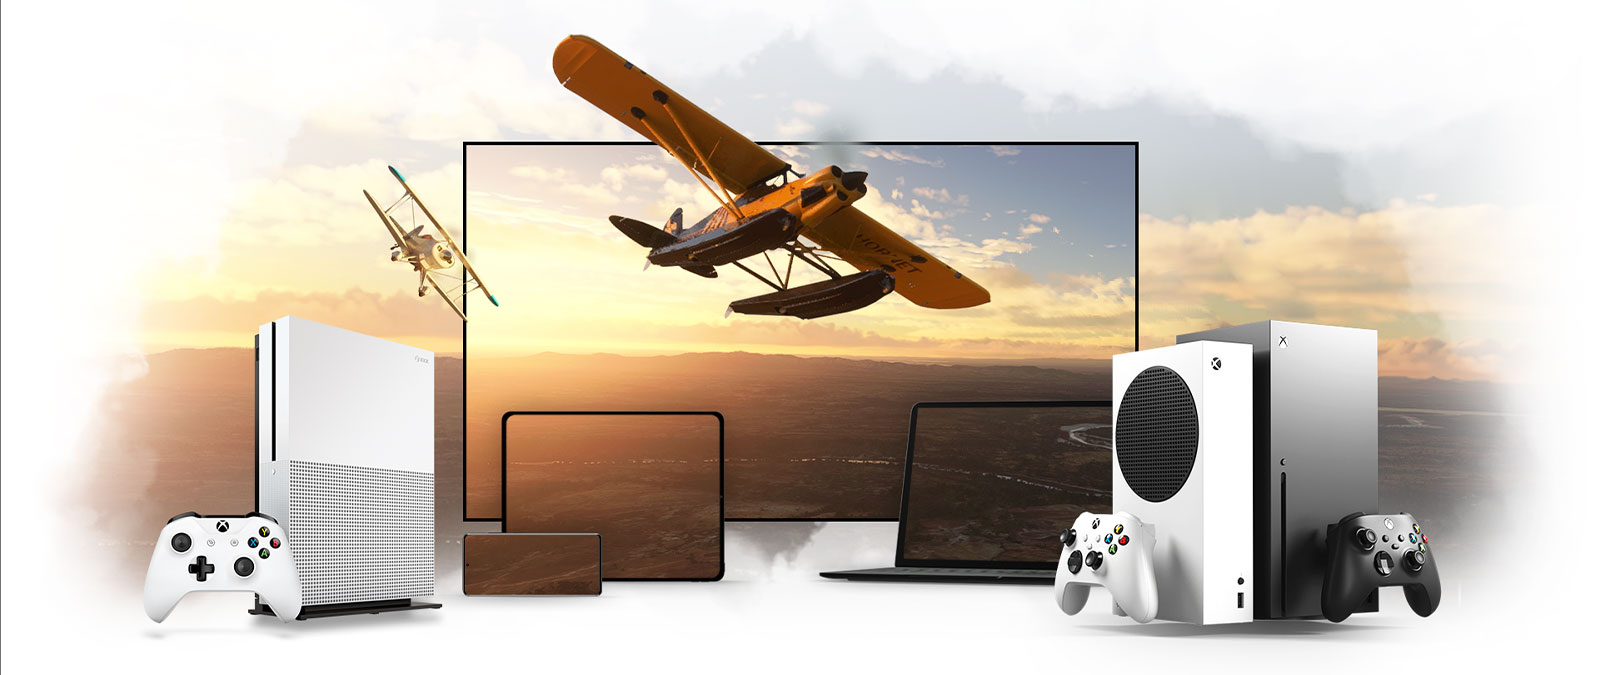 En rad med enheter inklusive en Xbox One och en Xbox Series X. Ett propellerplan flyger iväg från en solupplyst horisont.